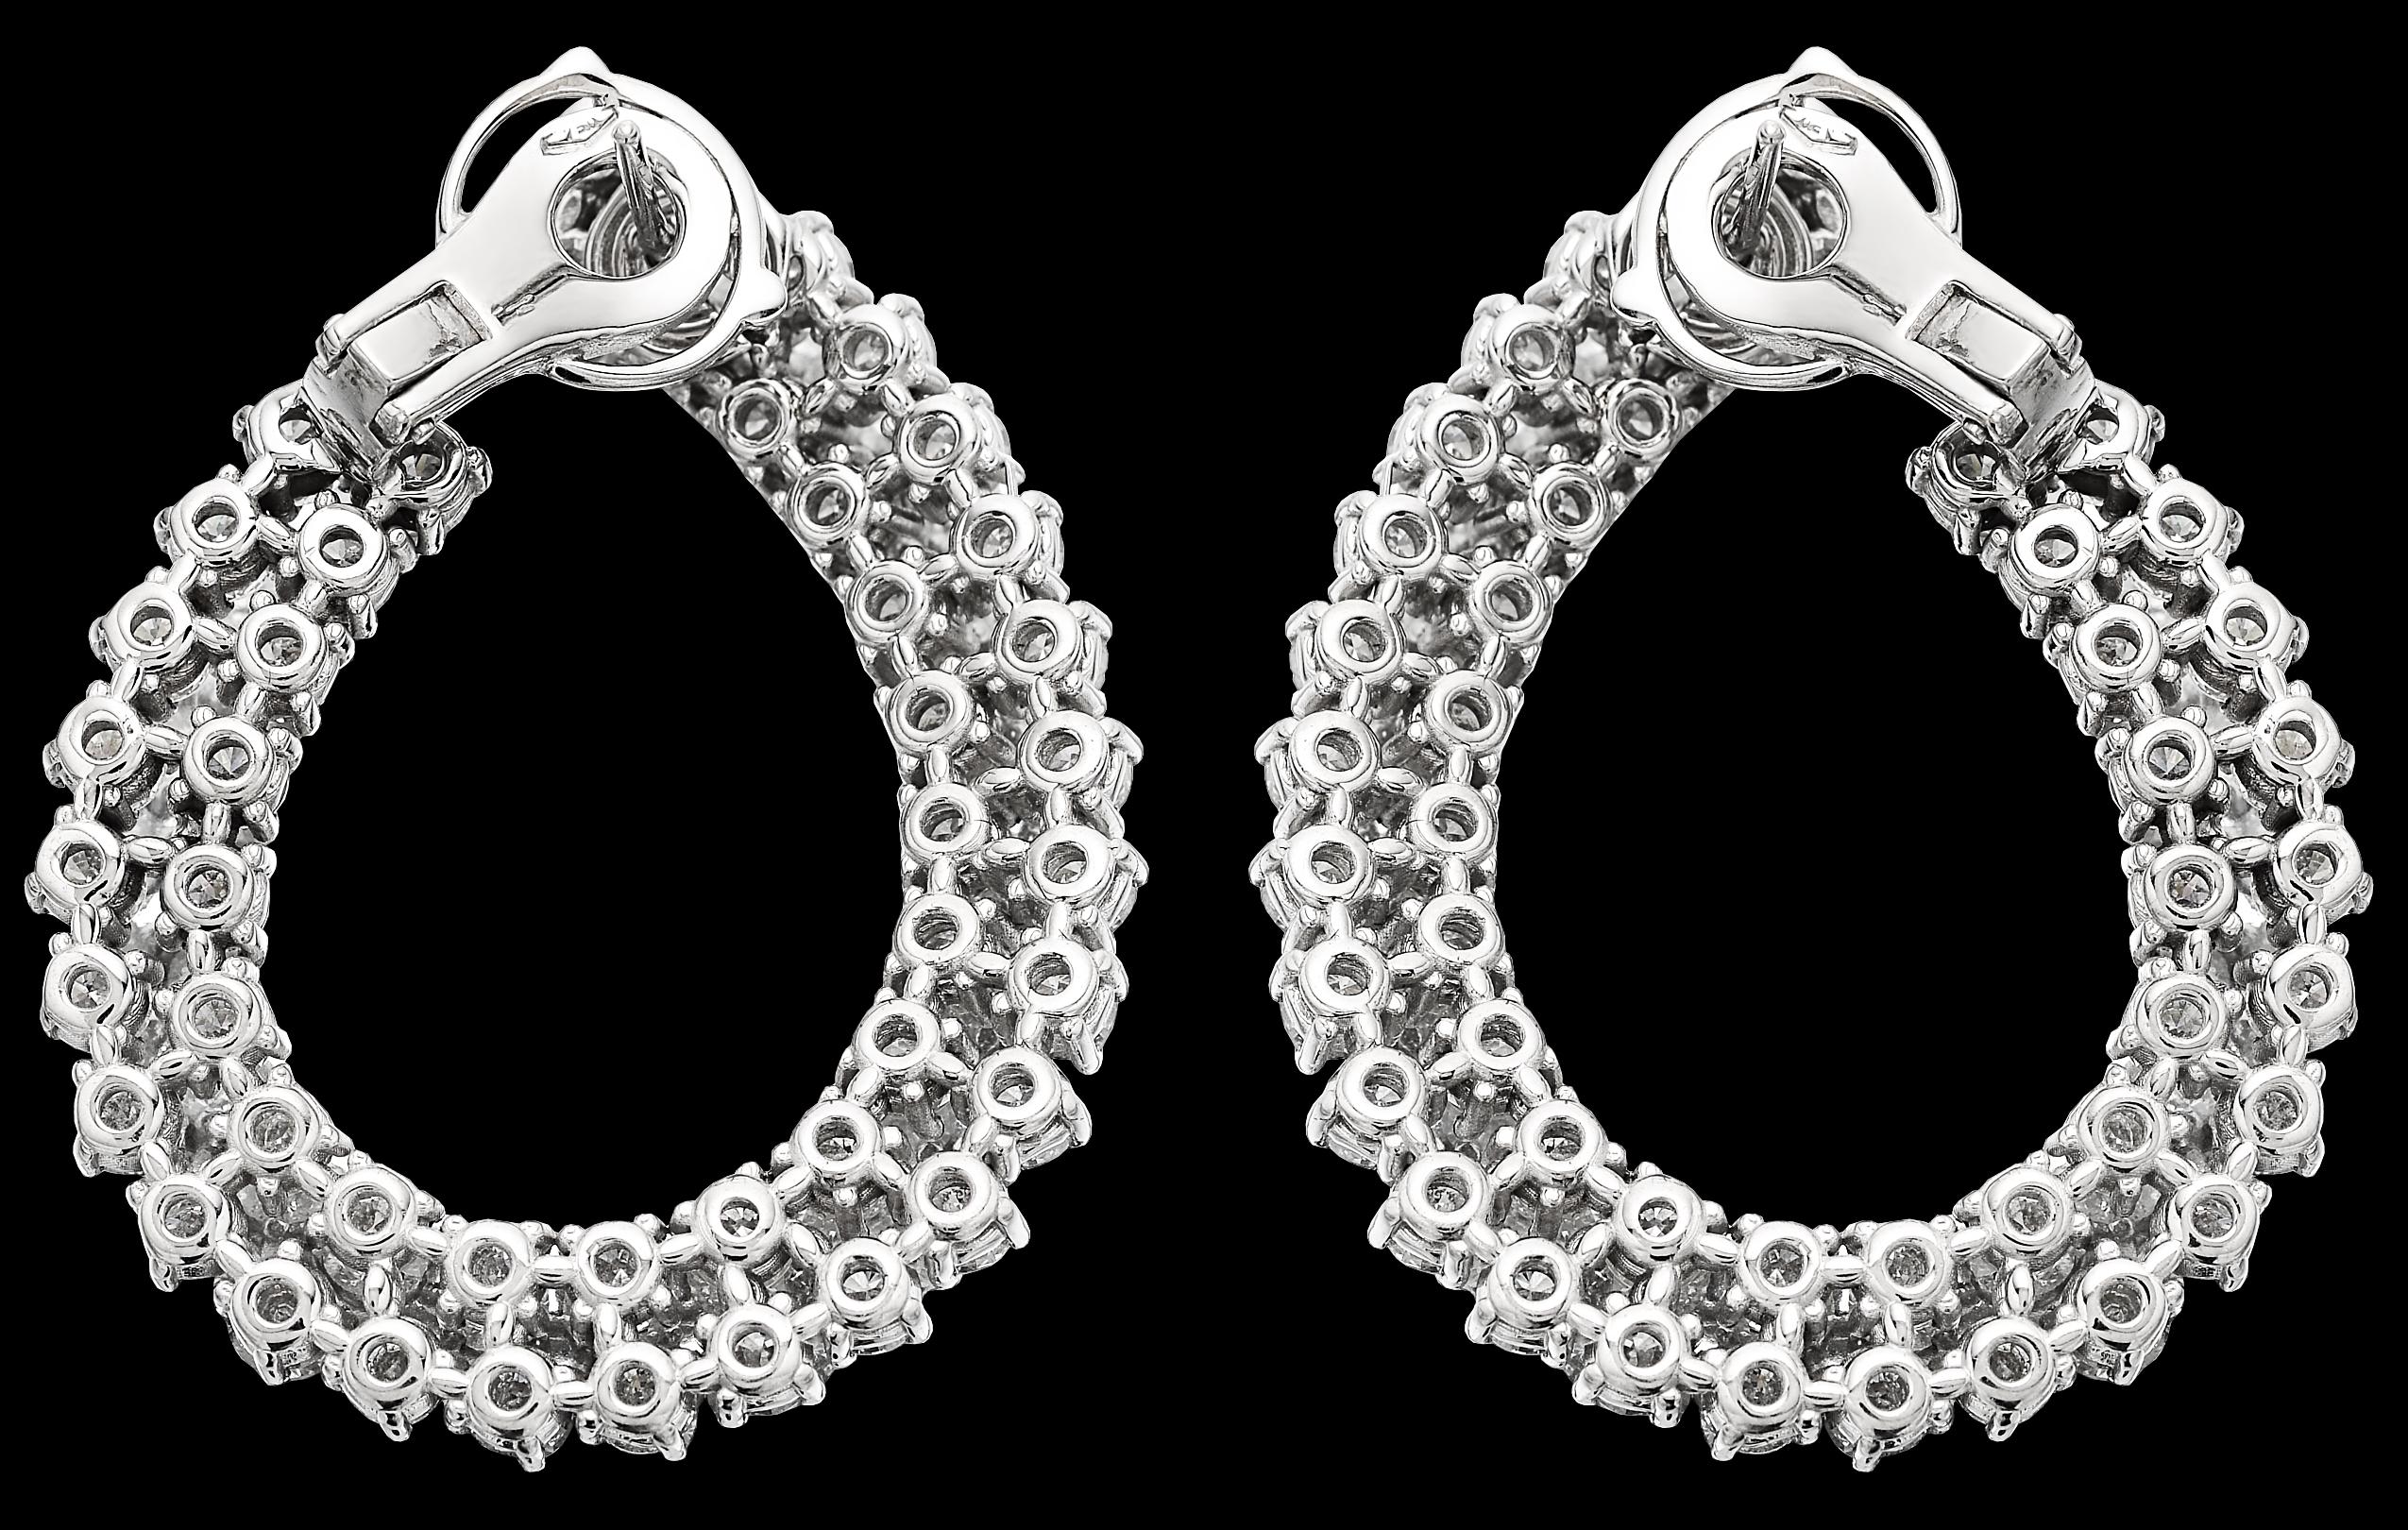 Round Cut Diamond Double Hoop Earrings, in 18K White Gold, Oval, Easy to Wear Fittings